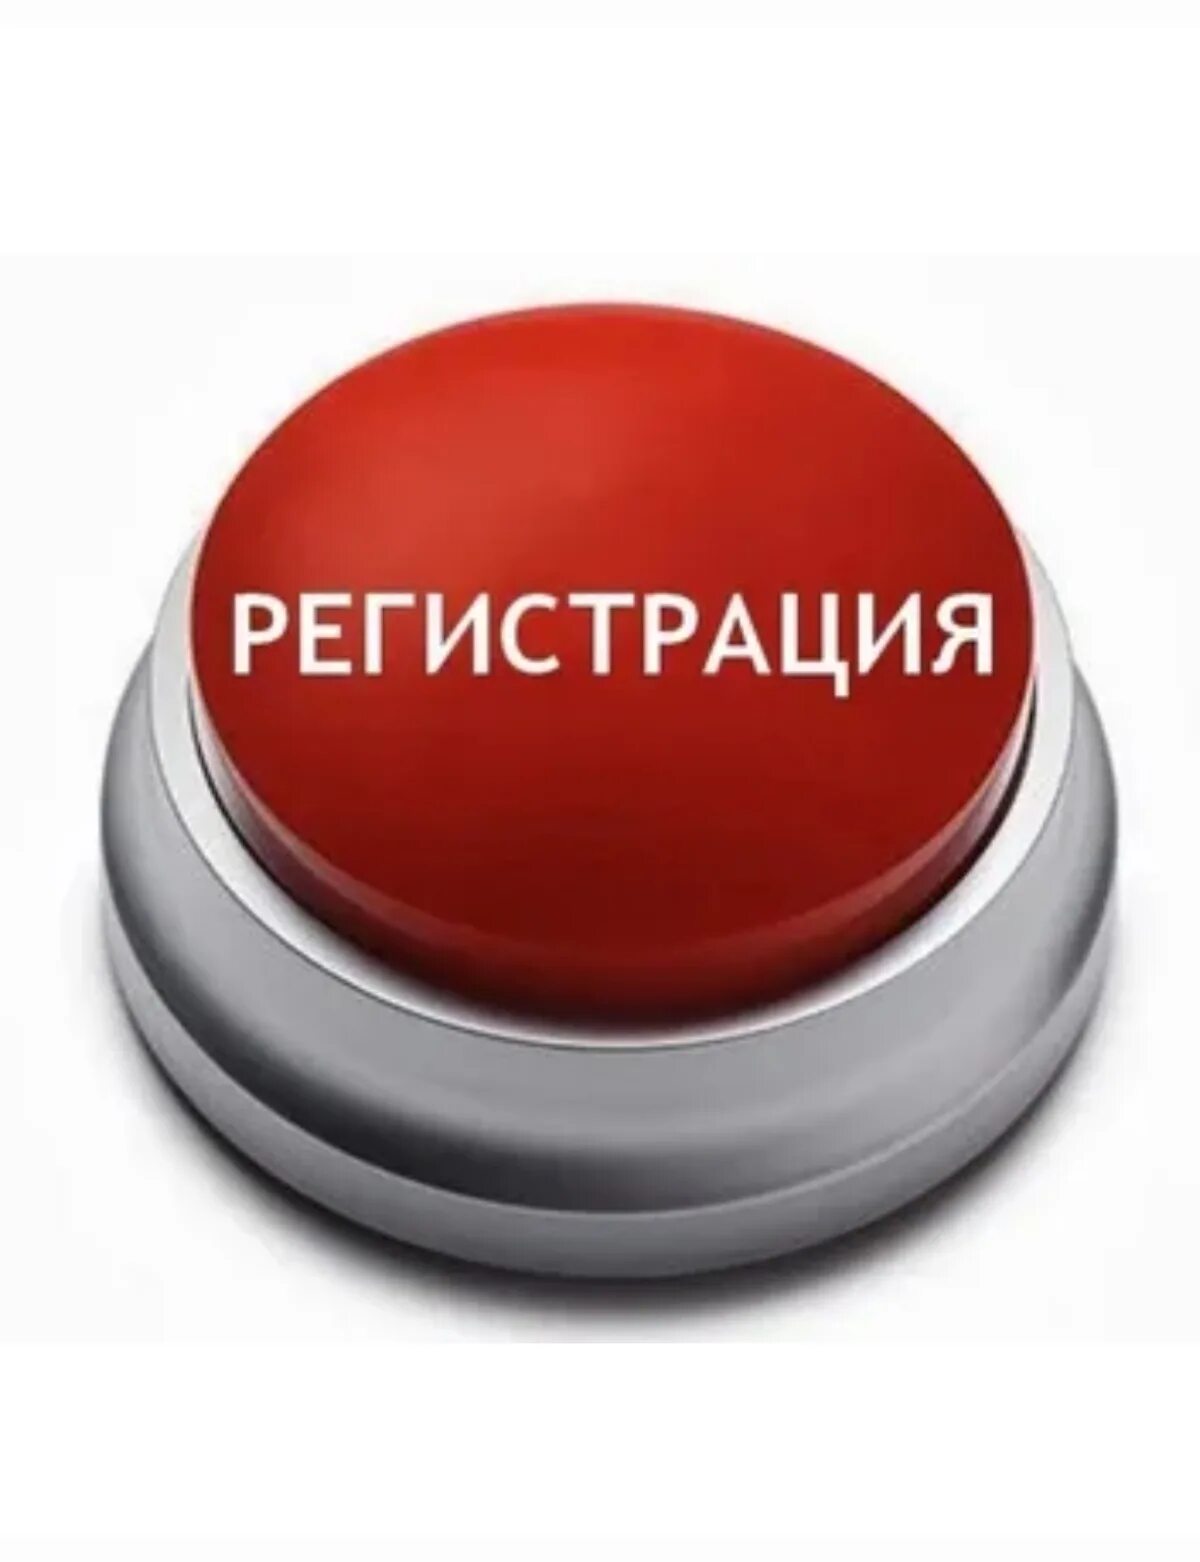 Кнопка. Красная кнопка. Картинка жми на кнопку. Красная кнопка конец. После красной кнопки